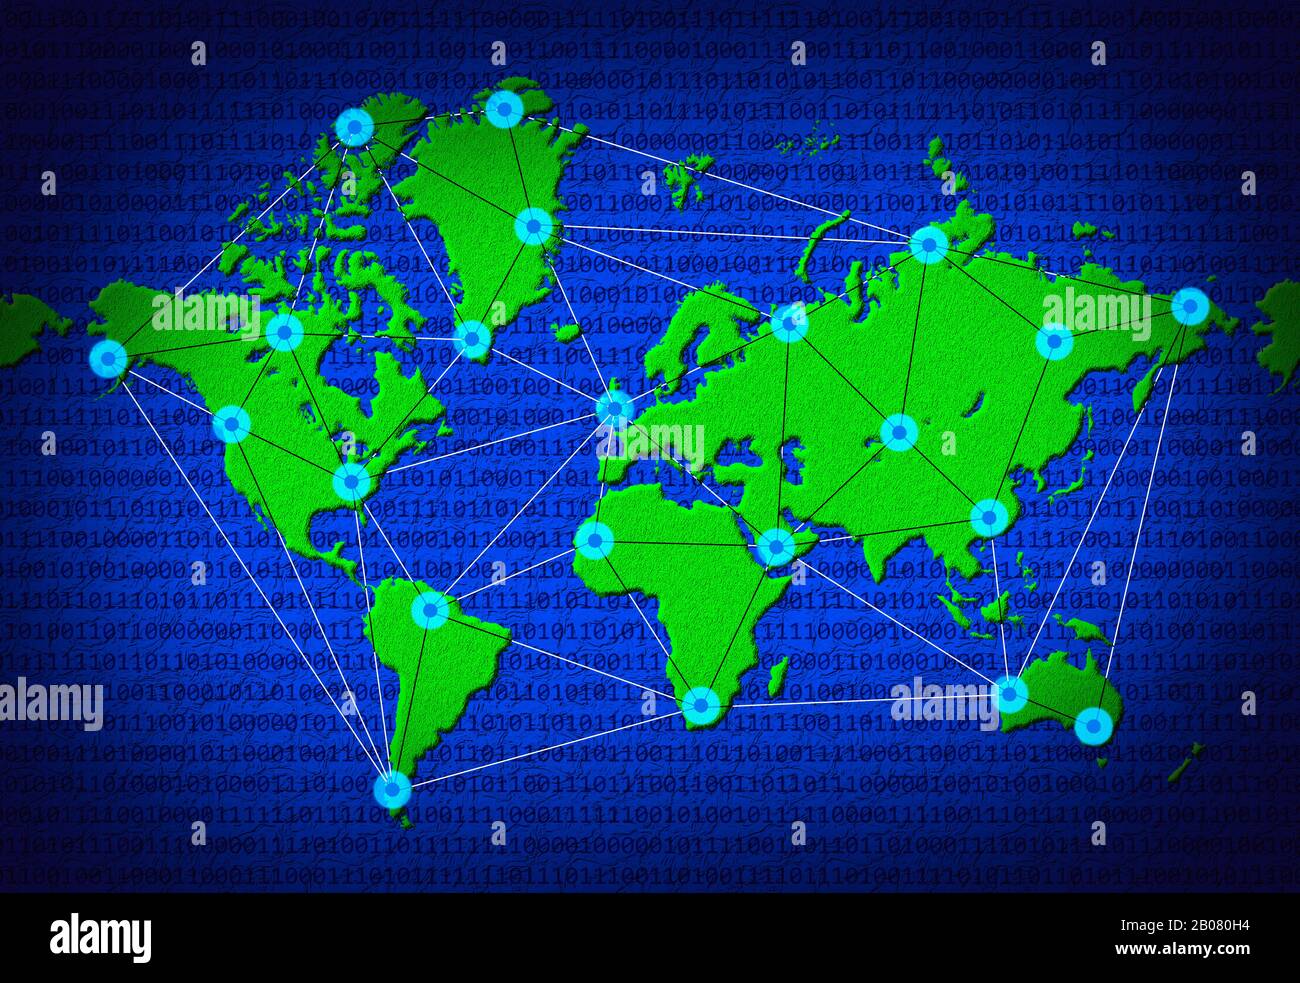 Internetkonzept und Darstellung der weltweiten Datenkonnektivität. 2D-Globus mit Datenleitungen und Datenknoten, die zwischen Ländern der Welt verbunden sind. Stockfoto